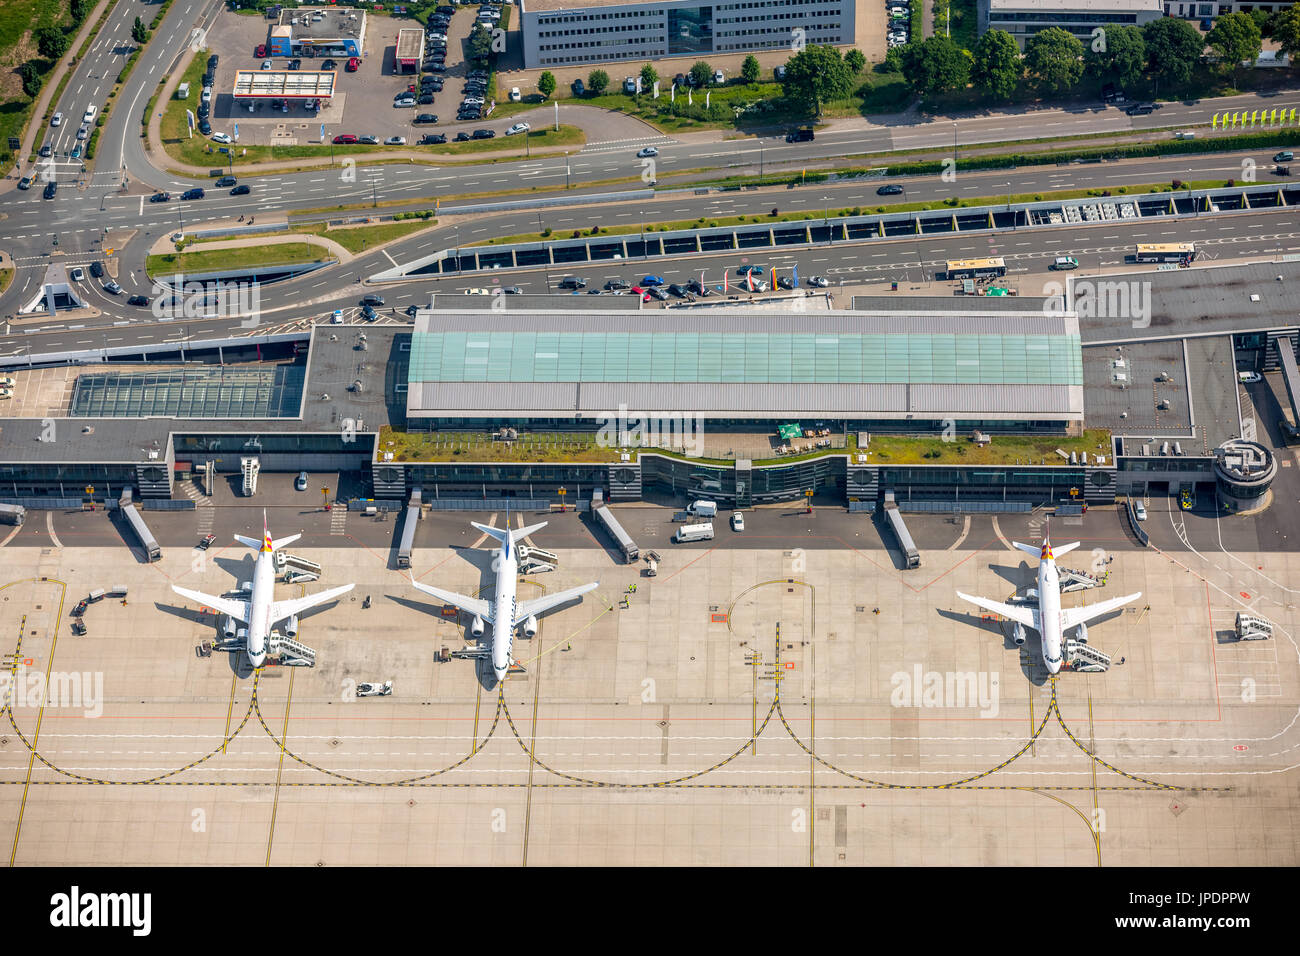 Aeroporto regionale Dortmund-Wickede, grembiule con aerei per il trasporto di passeggeri, terminale di volo, terminale 1, foto aerea, Dortmund, la zona della Ruhr Foto Stock